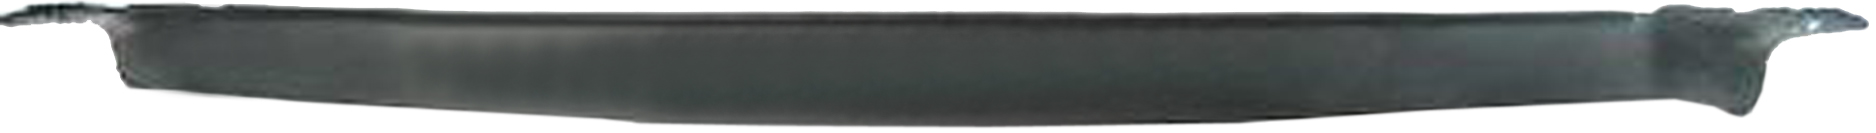 Aftermarket APRON/VALANCE/FILLER PLASTIC for GMC - V2500 SUBURBAN, V2500 SUBURBAN,87-91,Front bumper deflector